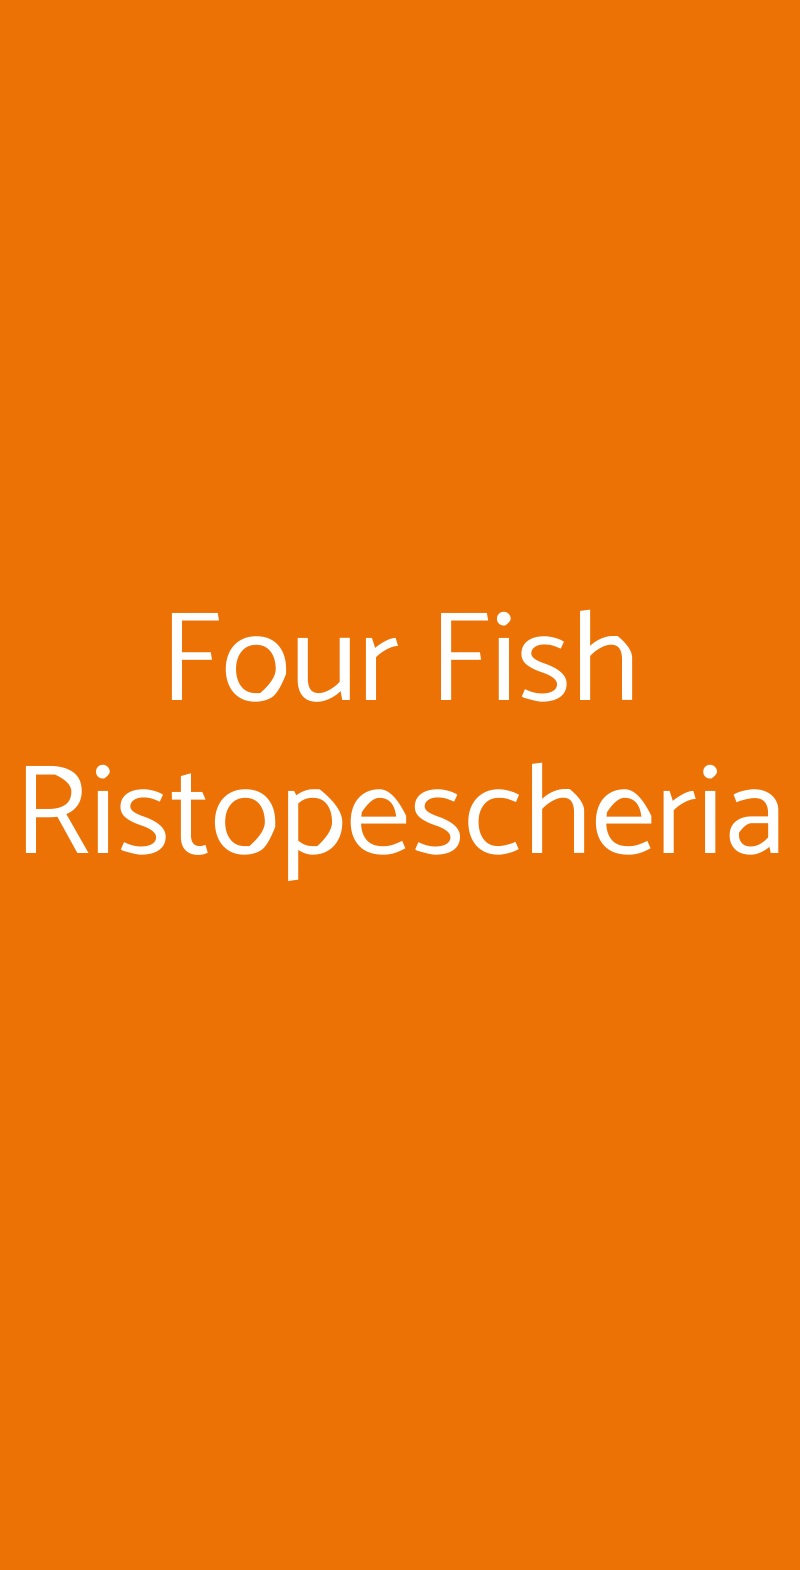 Four Fish Ristopescheria Roma menù 1 pagina